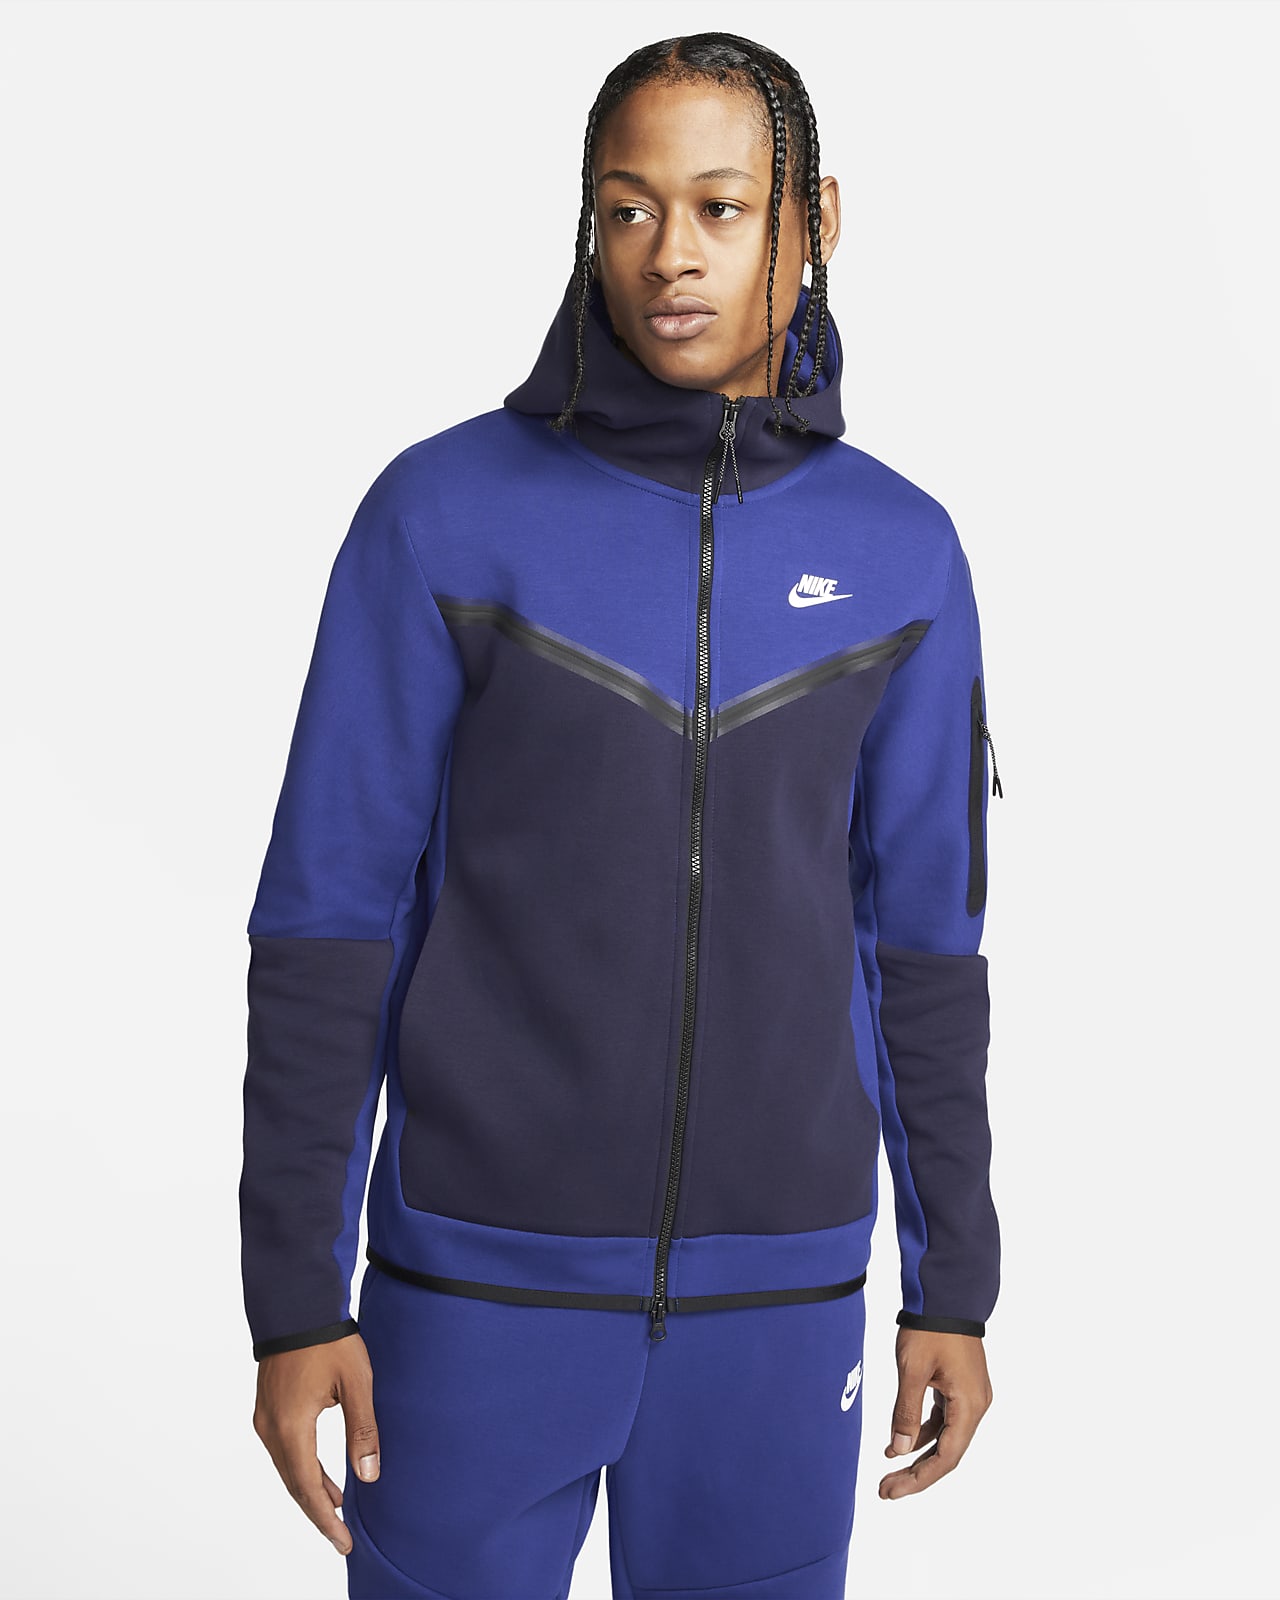 Ανδρική μπλούζα με κουκούλα και φερμουάρ σε όλο το μήκος Nike Sportswear Tech Fleece